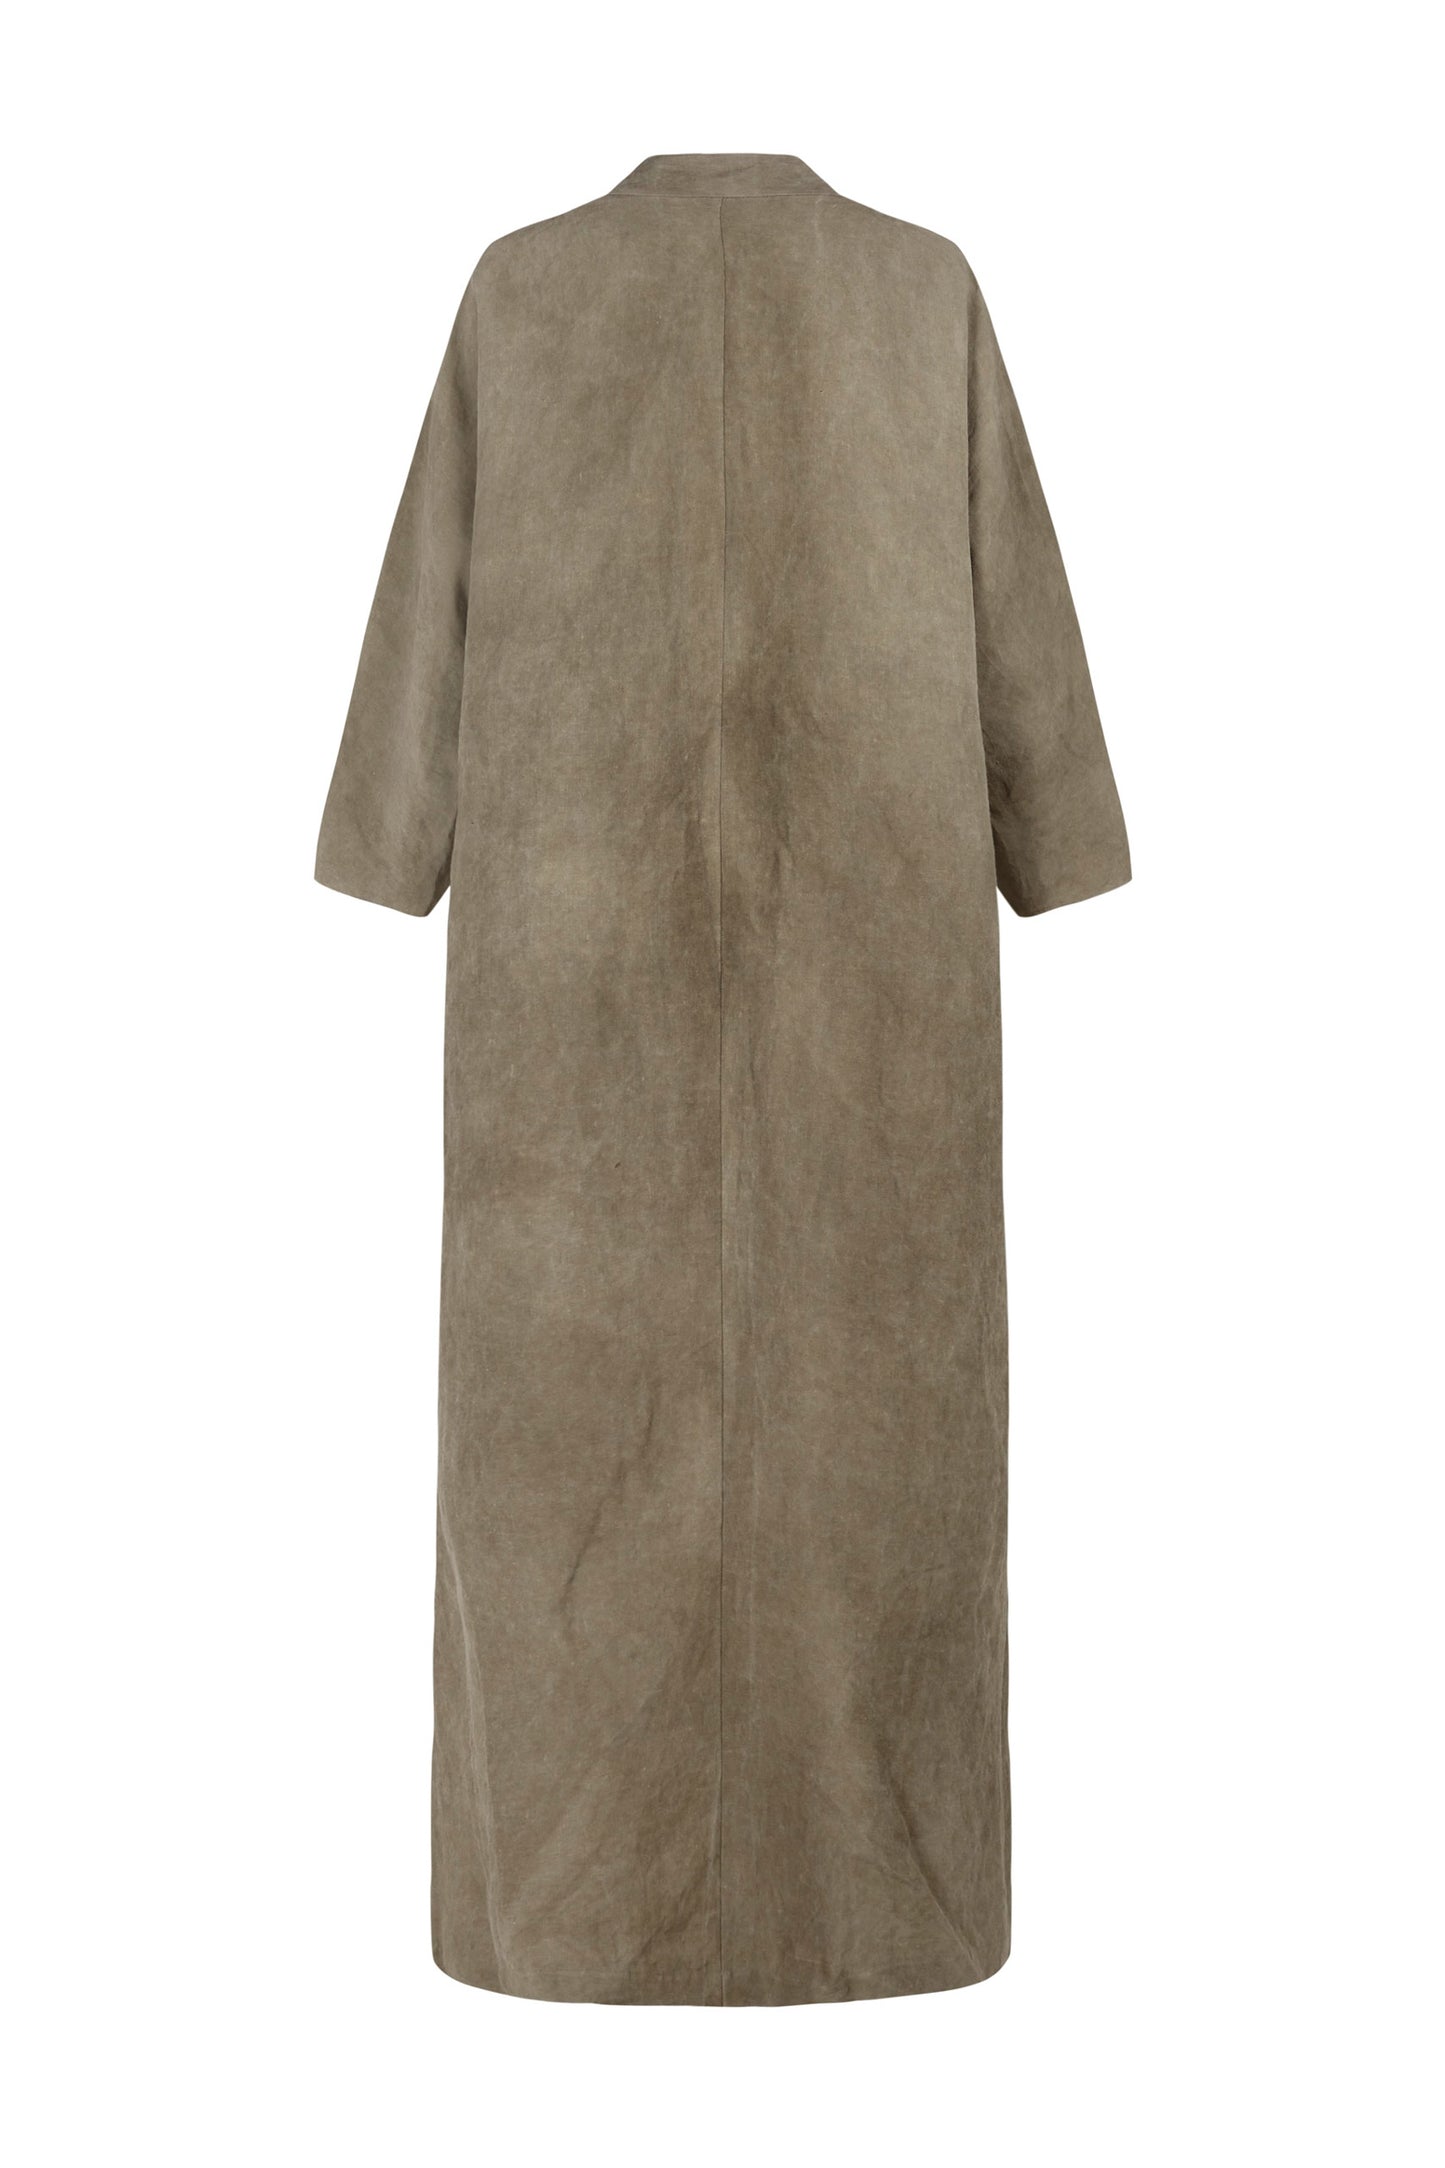 Bimba, stone gray maltinto linen coat